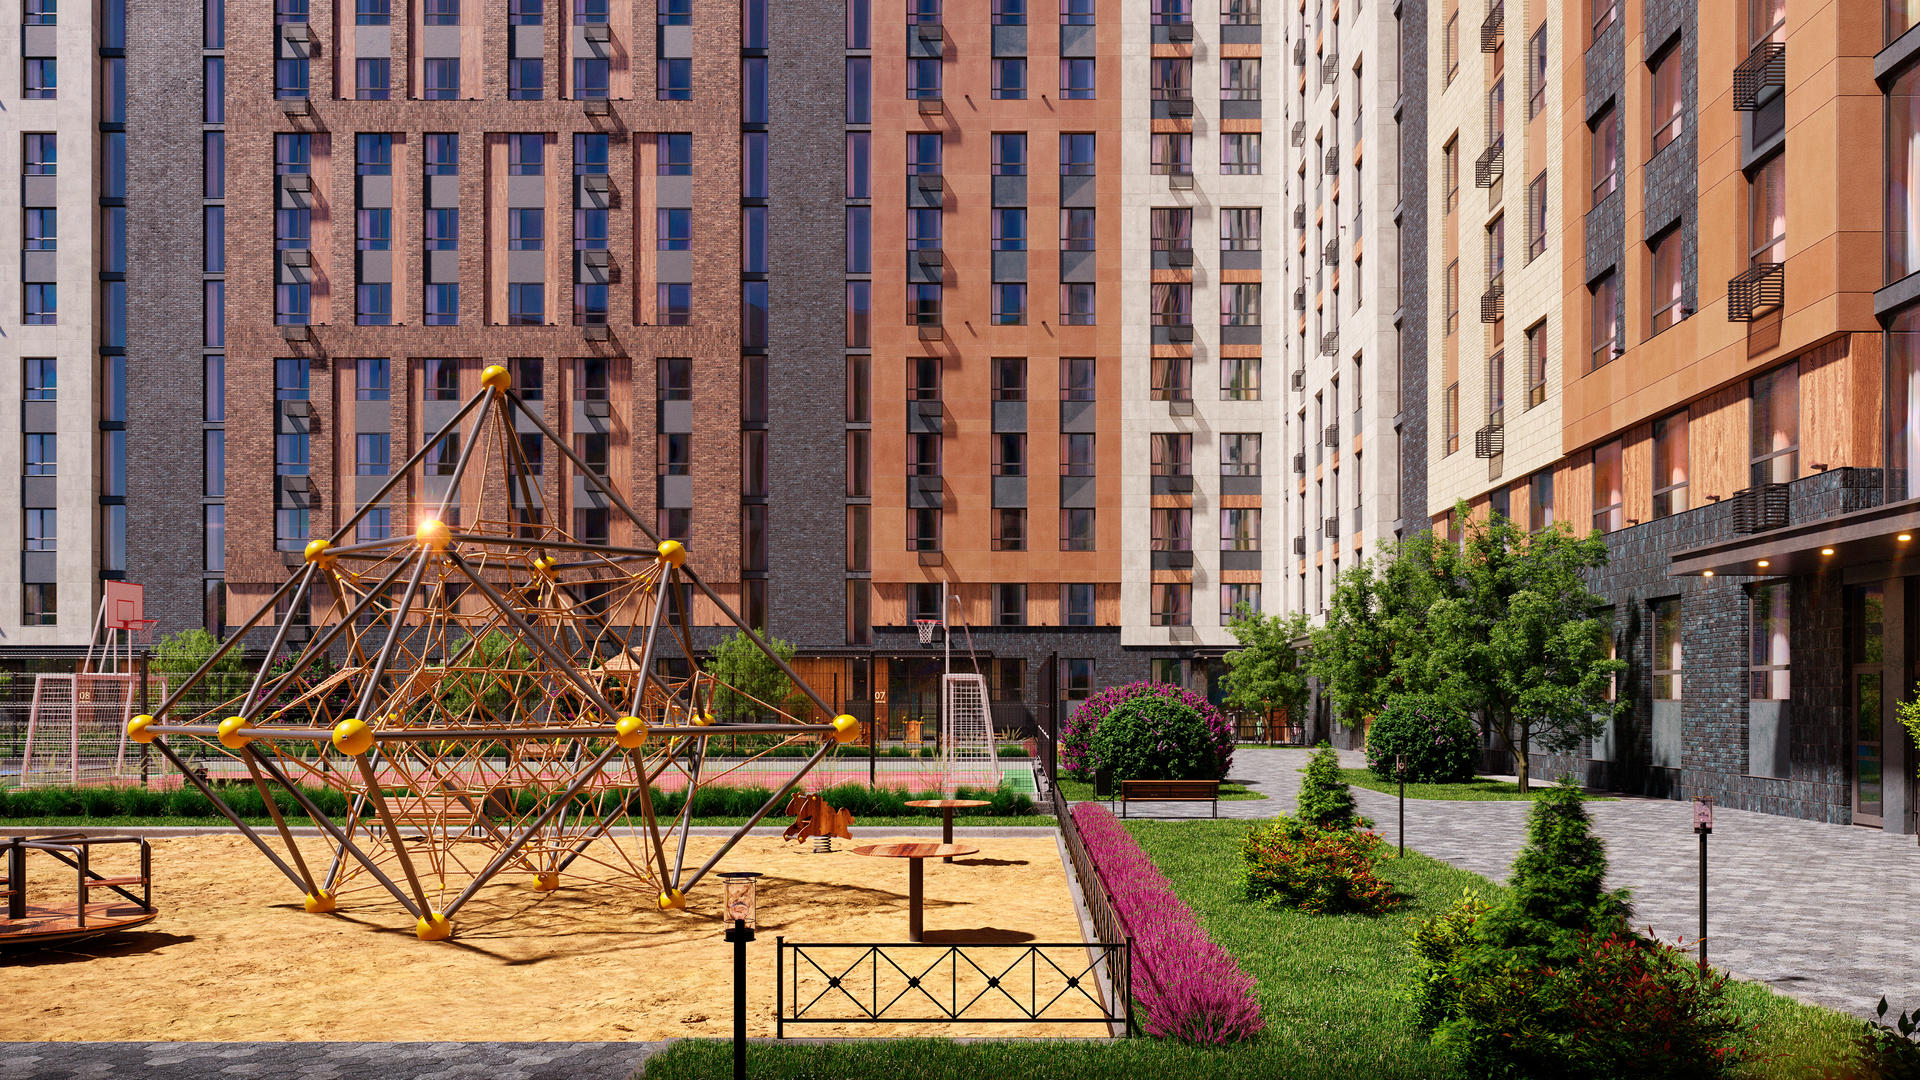 Продам квартиру в Москве по адресу жилой комплекс Эко Бунино, к18-19, площадь 538 квм Недвижимость Москва (Россия)  Внутри района есть облагороженная ландшафтная зона для прогулок и пикников, а также оборудованная набережная